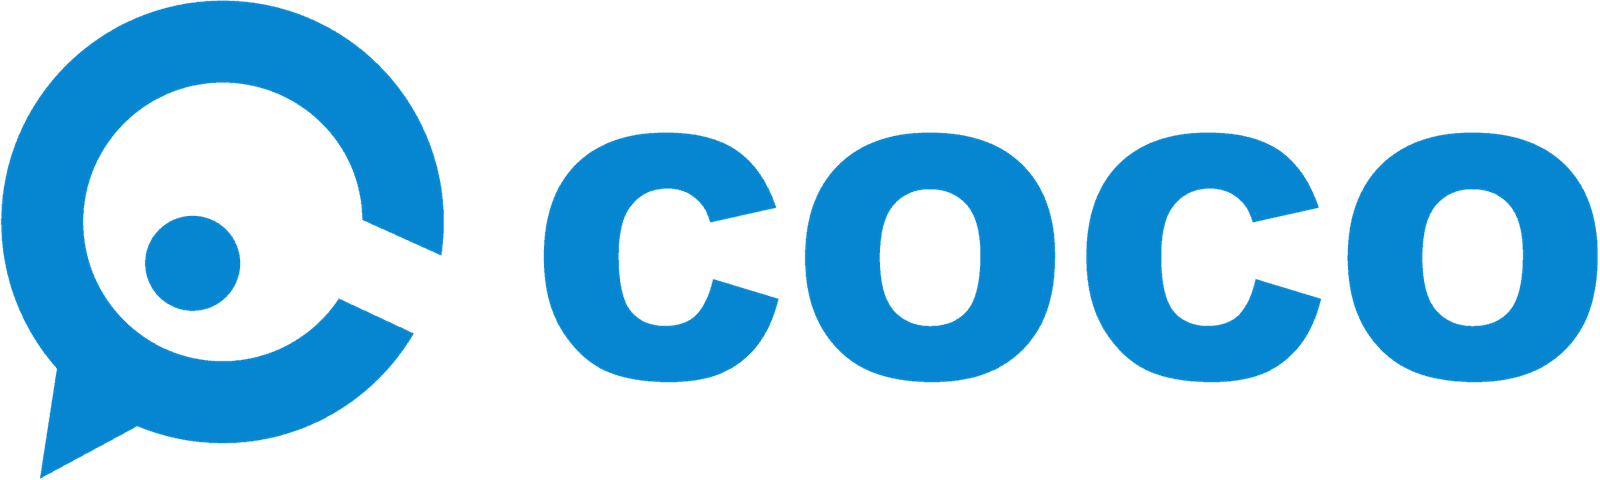 株式会社cocoのロゴ